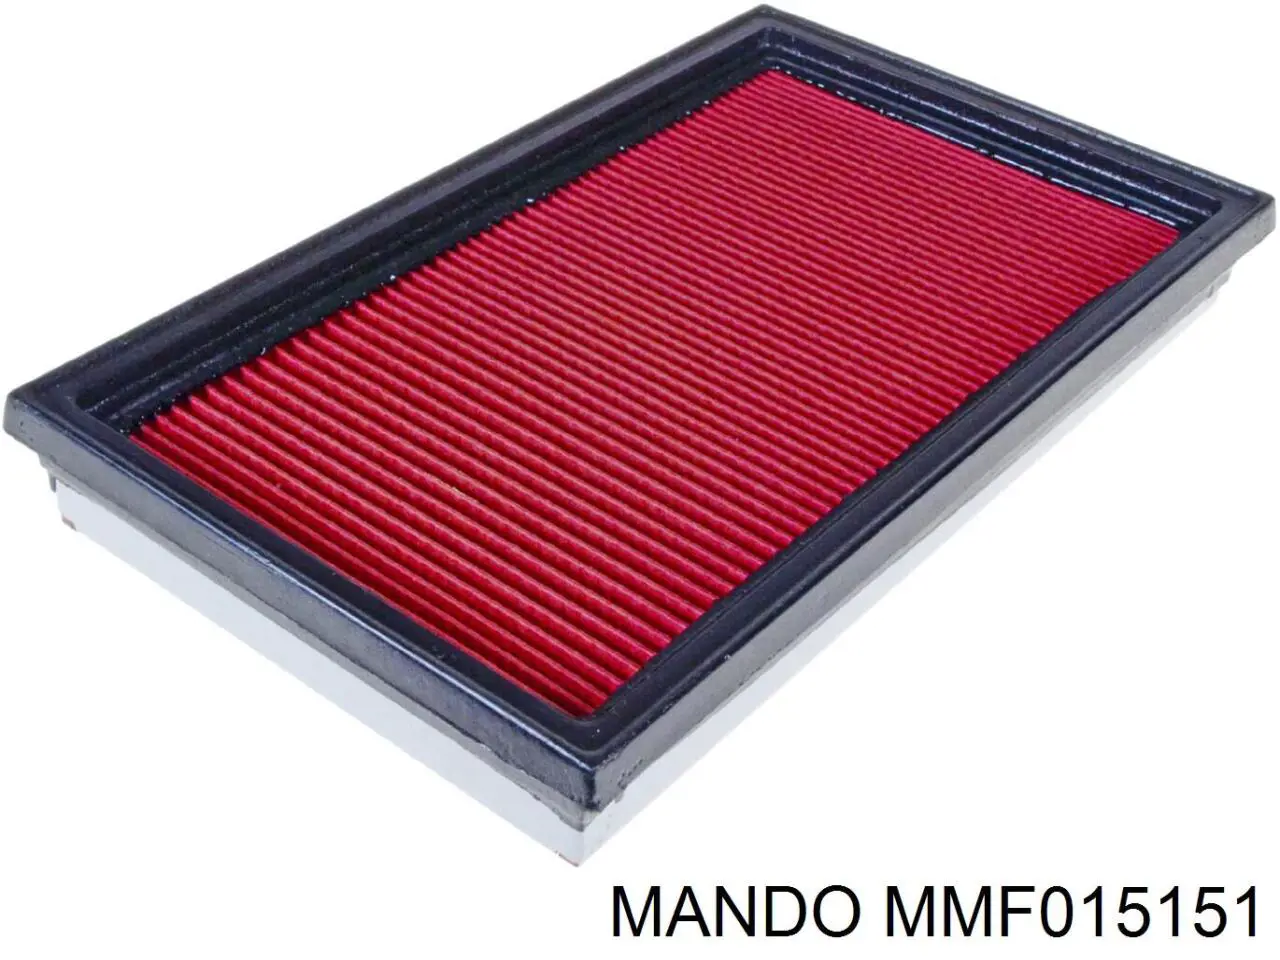 MMF015151 Mando filtro de aire